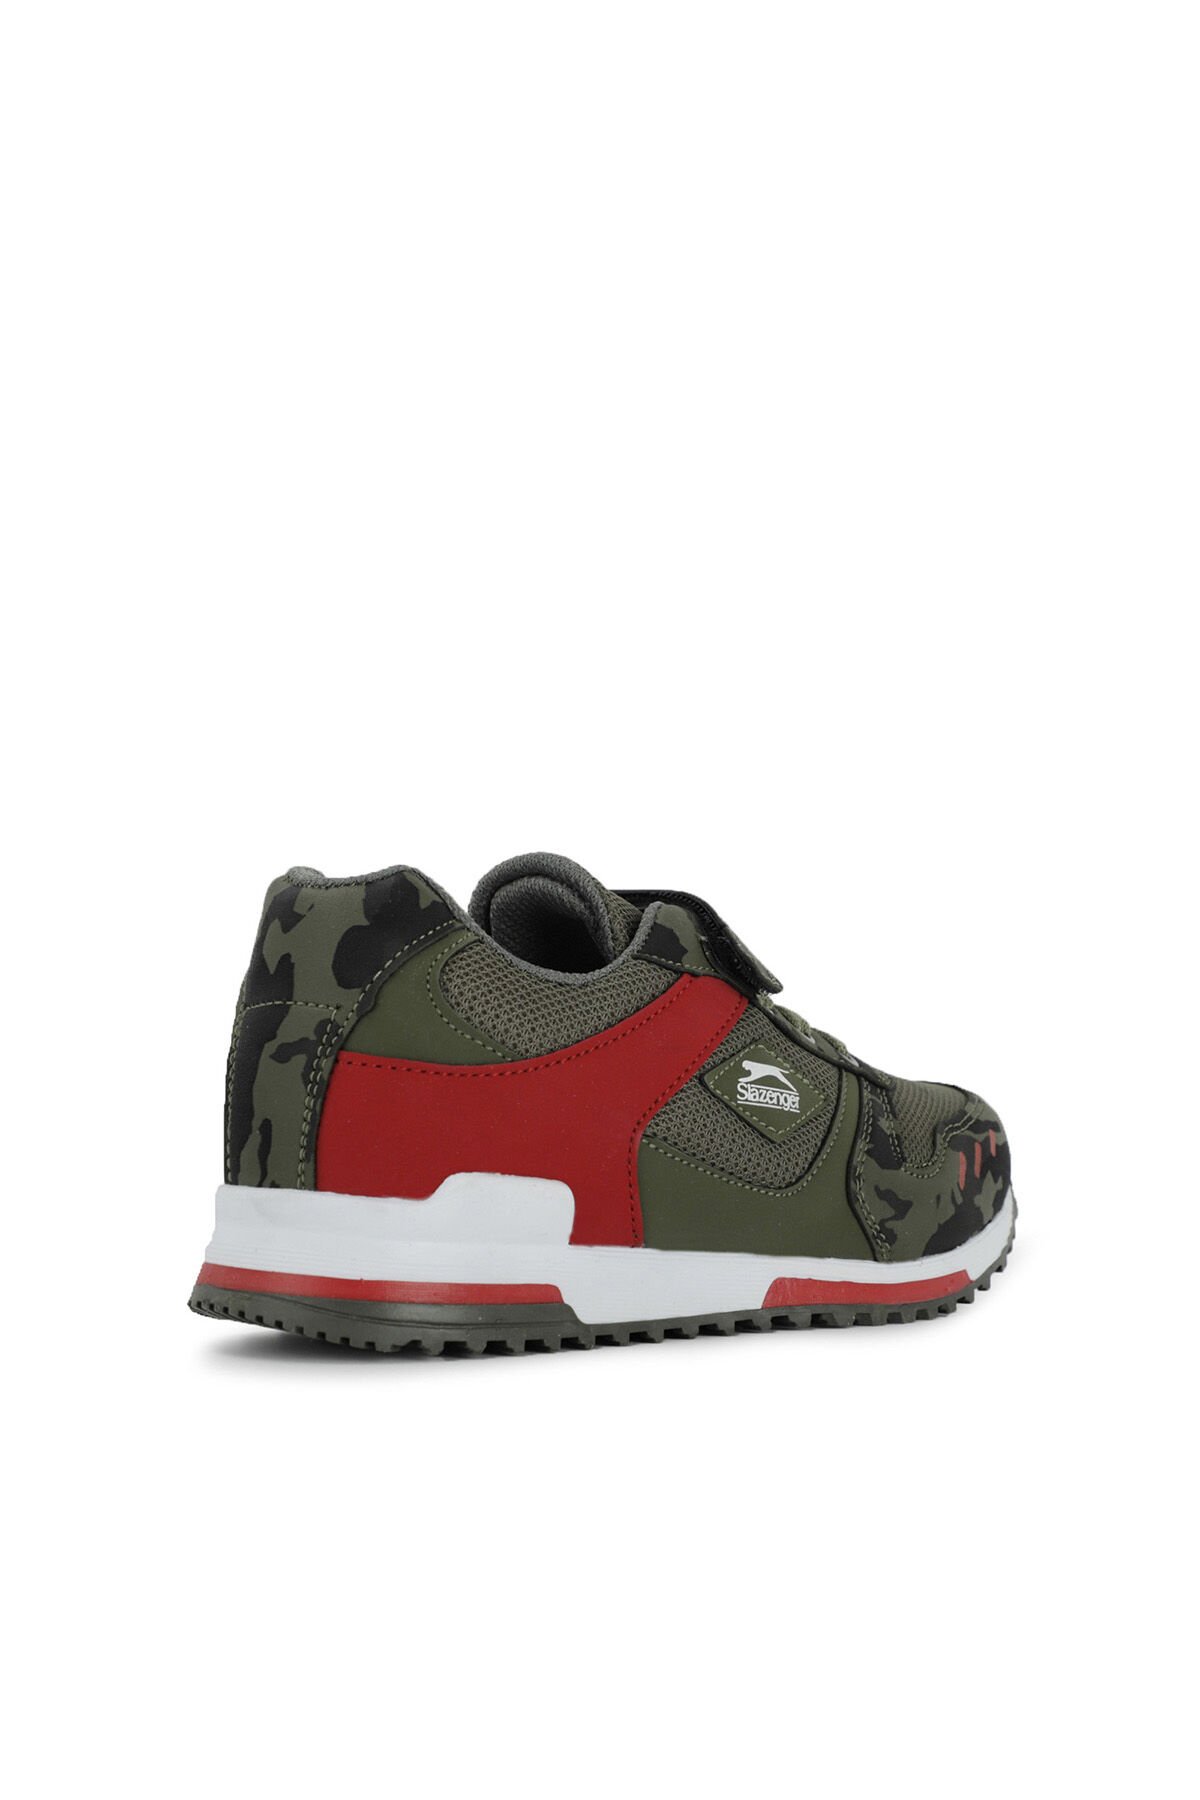 Slazenger EDMOND KTN Sneaker Erkek Çocuk Ayakkabı Haki Kamuflaj - Thumbnail